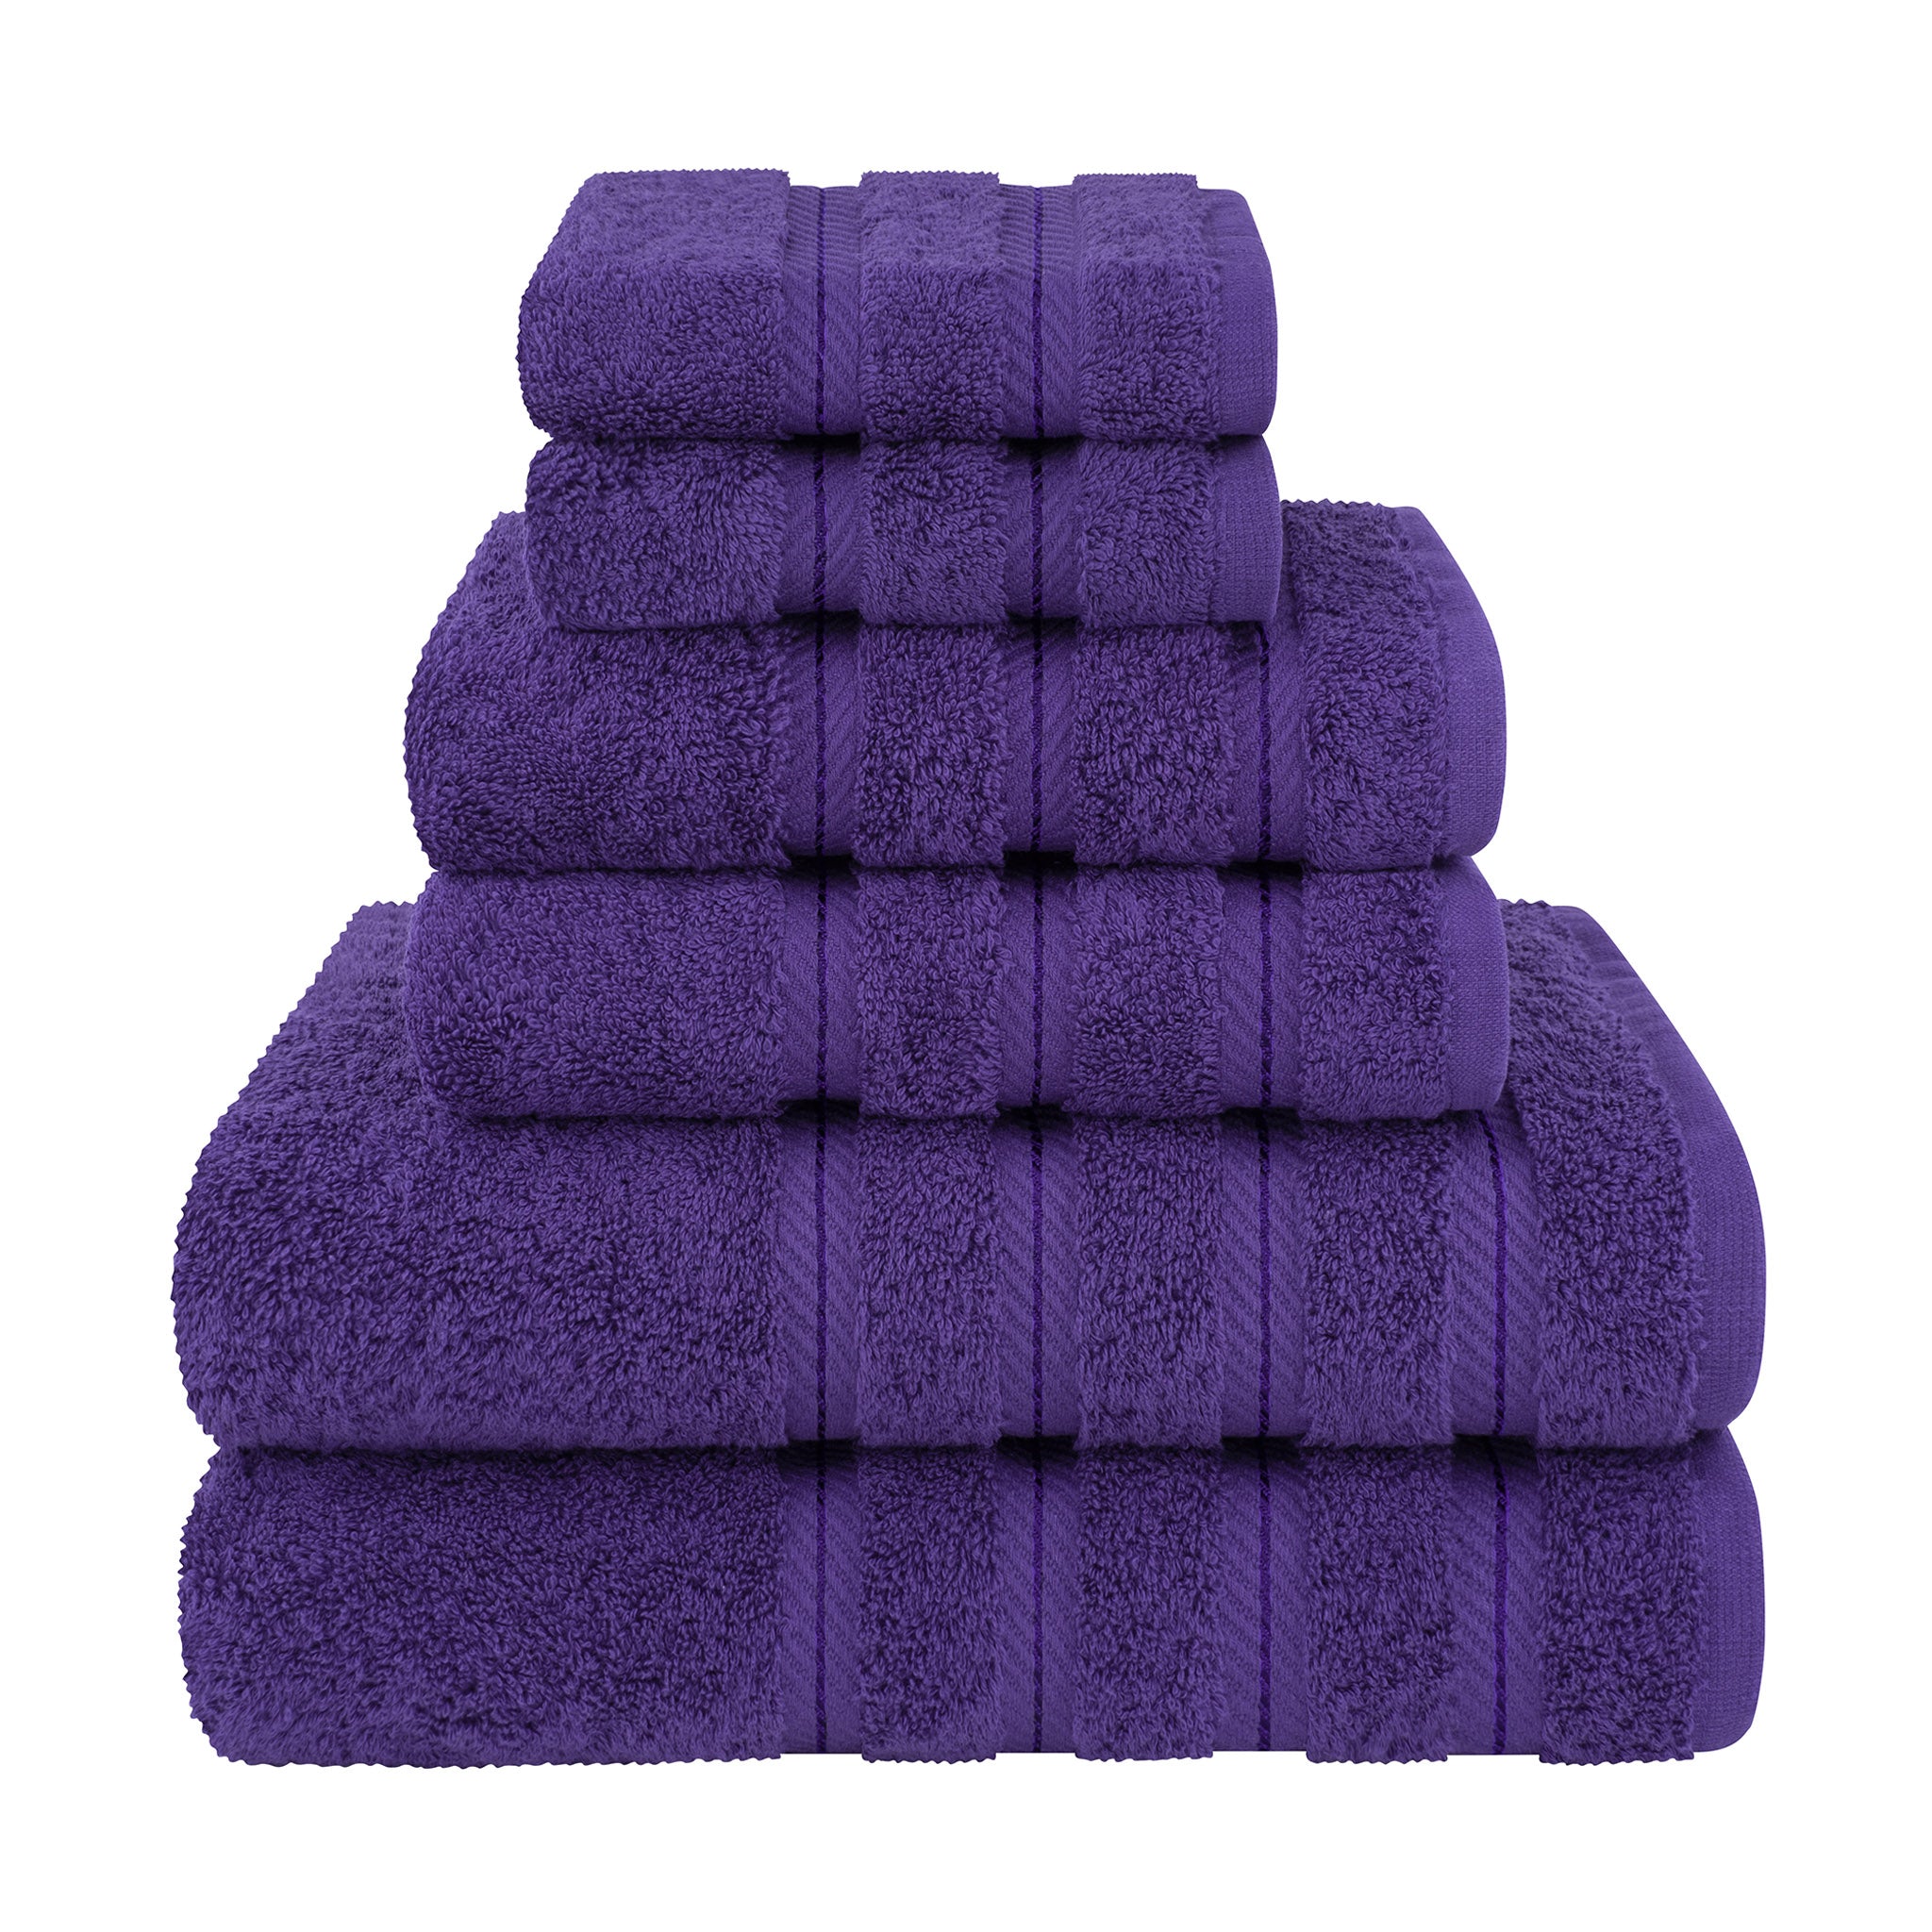 American Soft Linen 100% Turkish Cotton 6 Piece Towel Set Wholesale purple-1